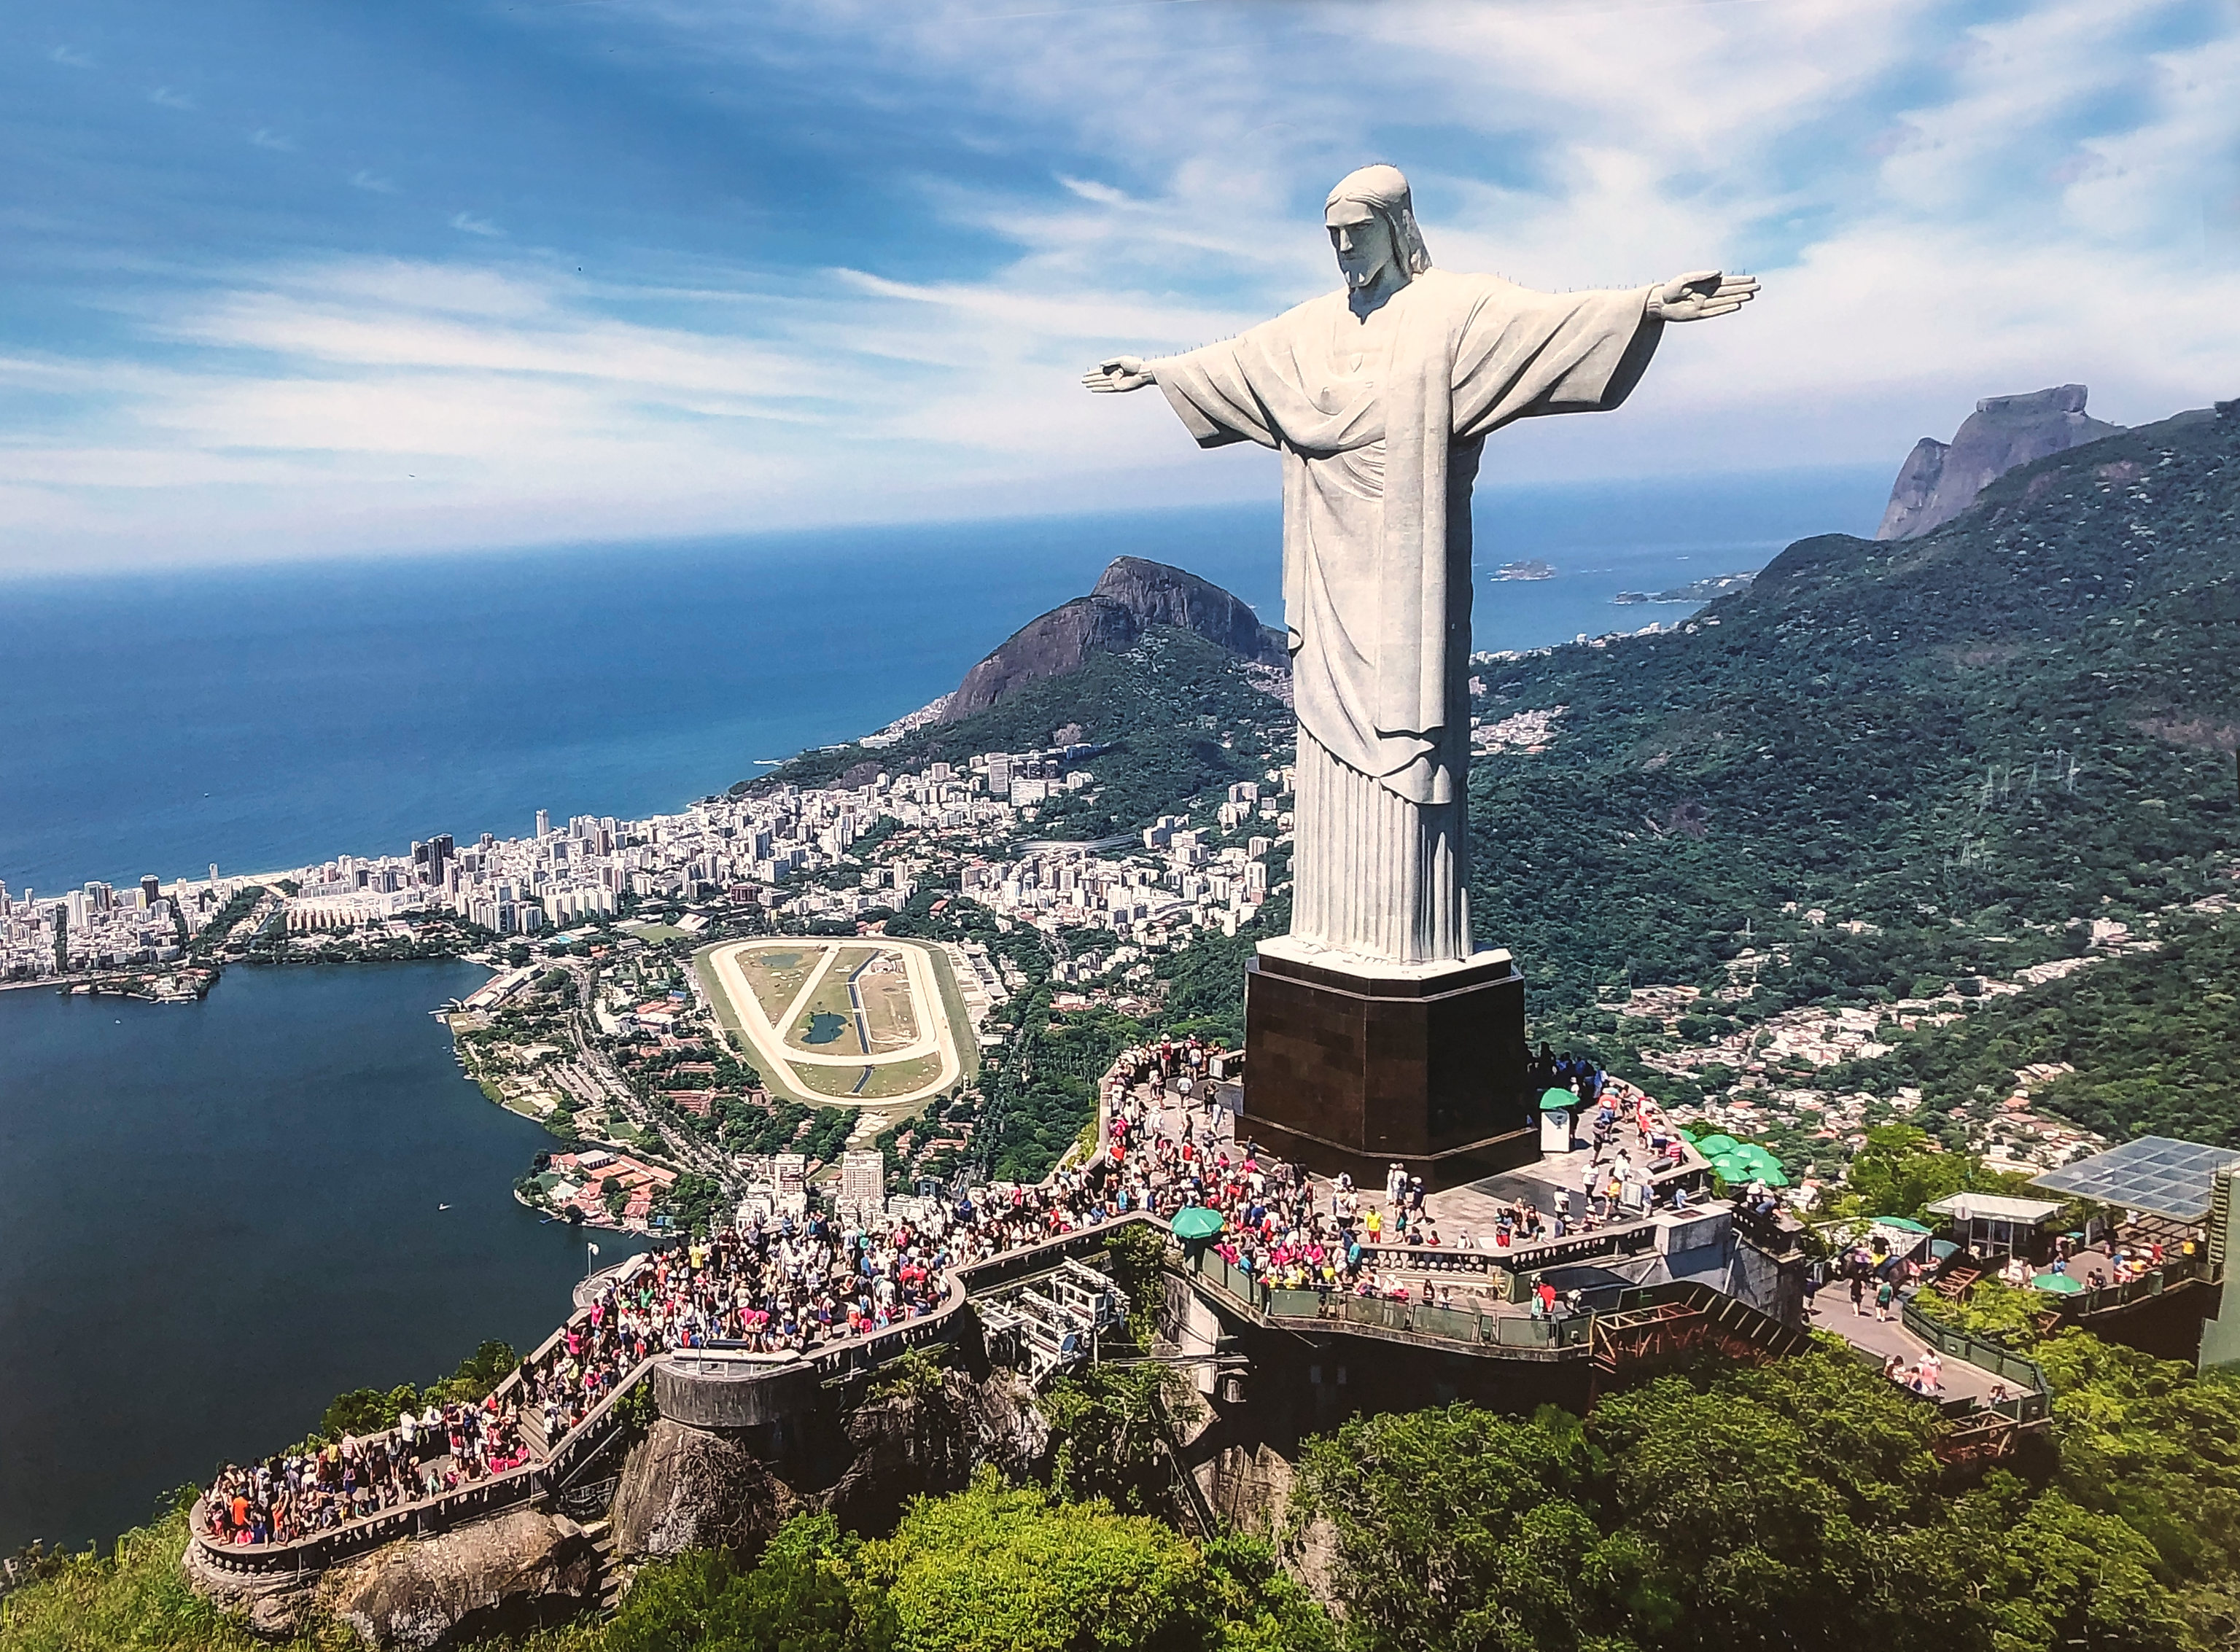 Как называется страна бразилия. Христос Искупитель Рио де Жанейро. Статуя Иисуса Христа в Рио-де-Жанейро. Статуя Христа-Искупителя в Рио-де-Жанейро, Бразилия. Тату Христа-Искупителя Бразилия.